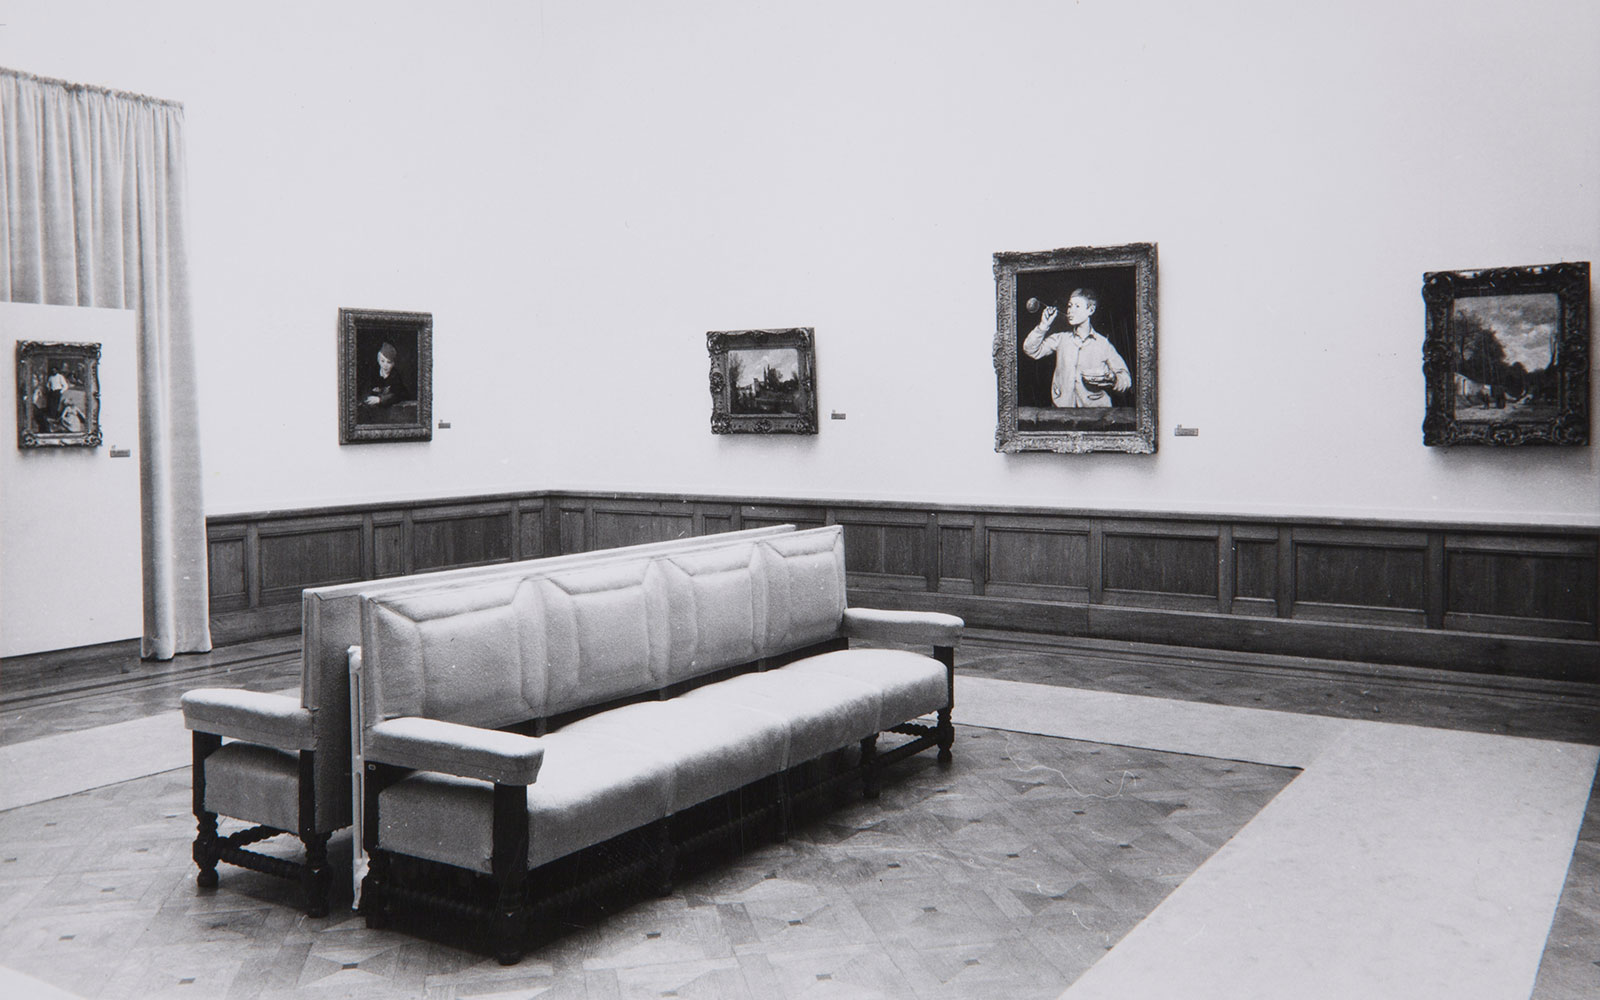 Aspeto da exposição «Pinturas da Colecção da Fundação Calouste Gulbenkian». Museu Nacional de Arte Antiga, Lisboa, 1961. Arquivos Gulbenkian | ID: 198821